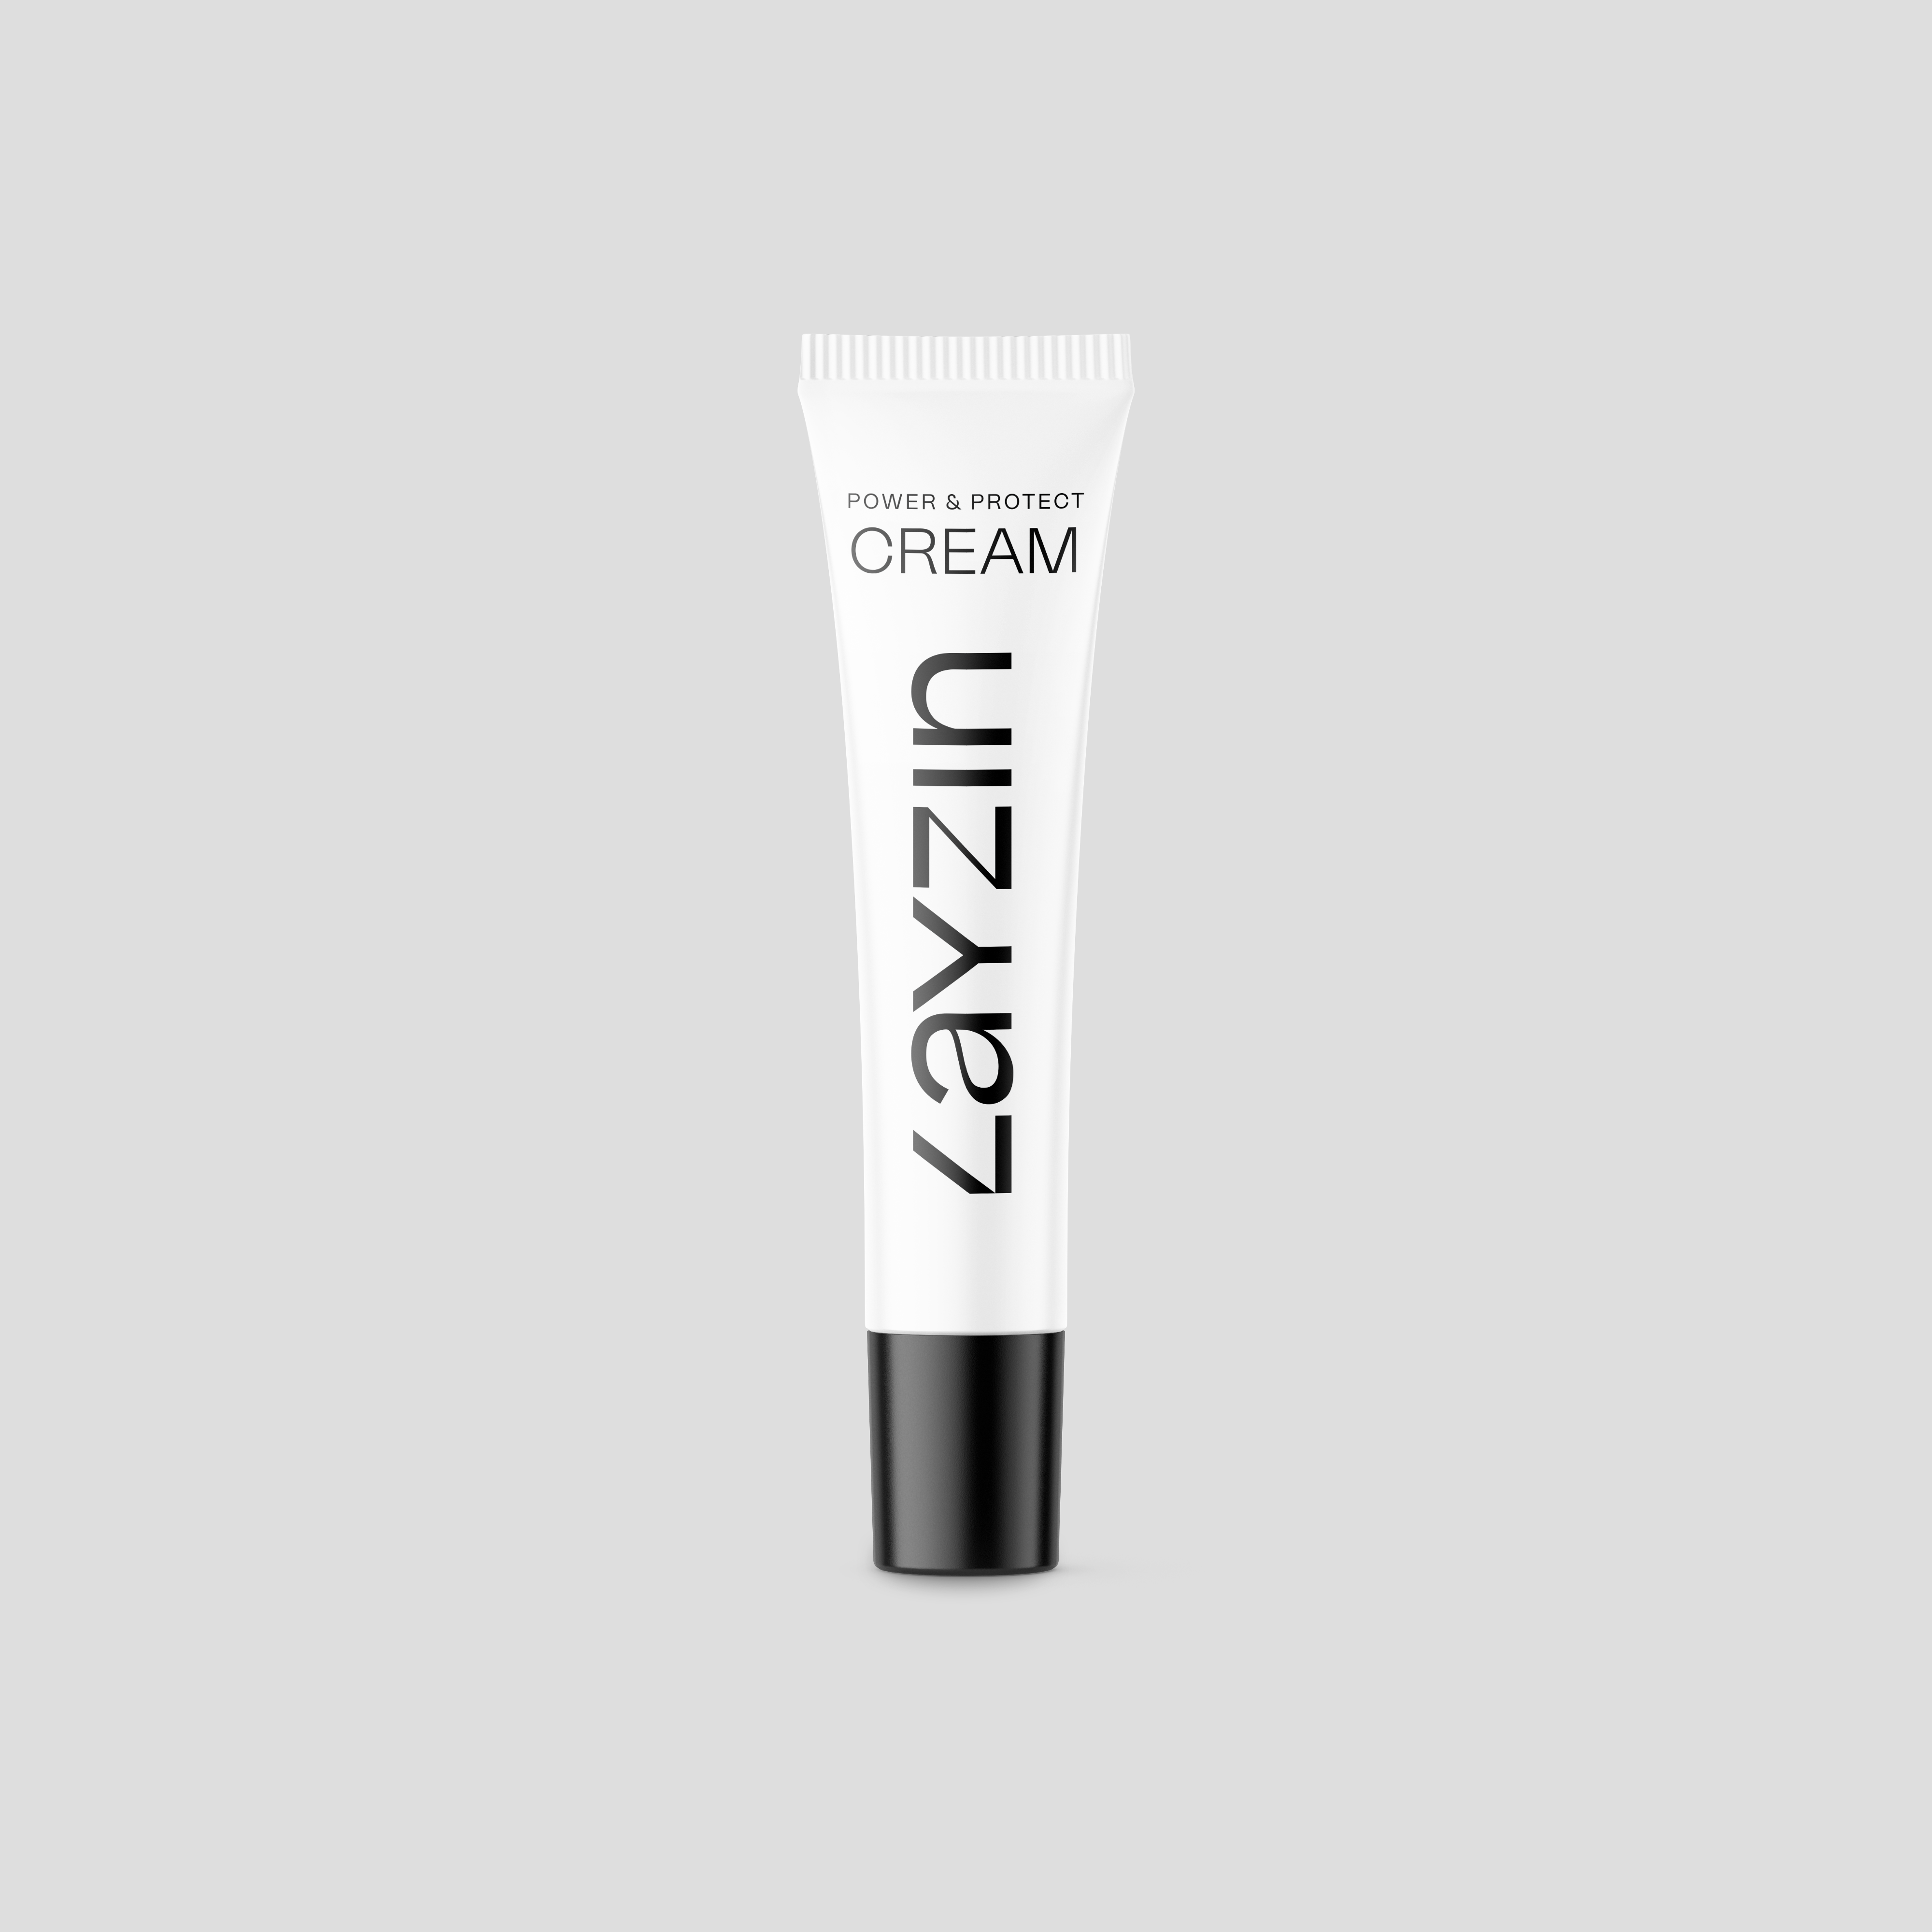 LAYZIN Power en Protect Cream  spf30 bescherming tegen UV straling en huidveroudering